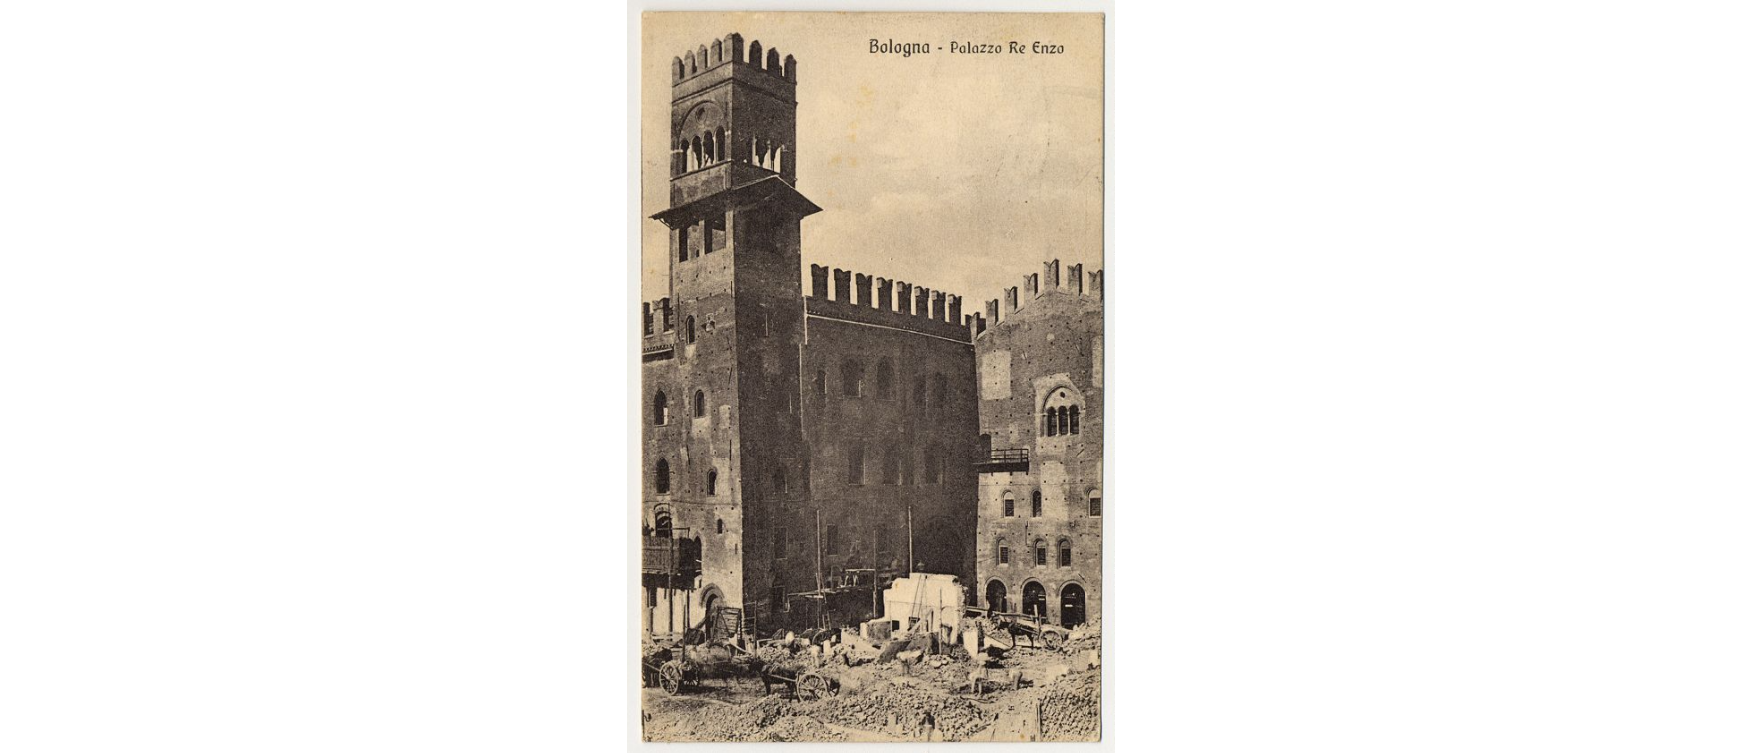 Fotografo non identificato, Bologna - Palazzo Re Enzo, 1913, cartolina, FFC016263